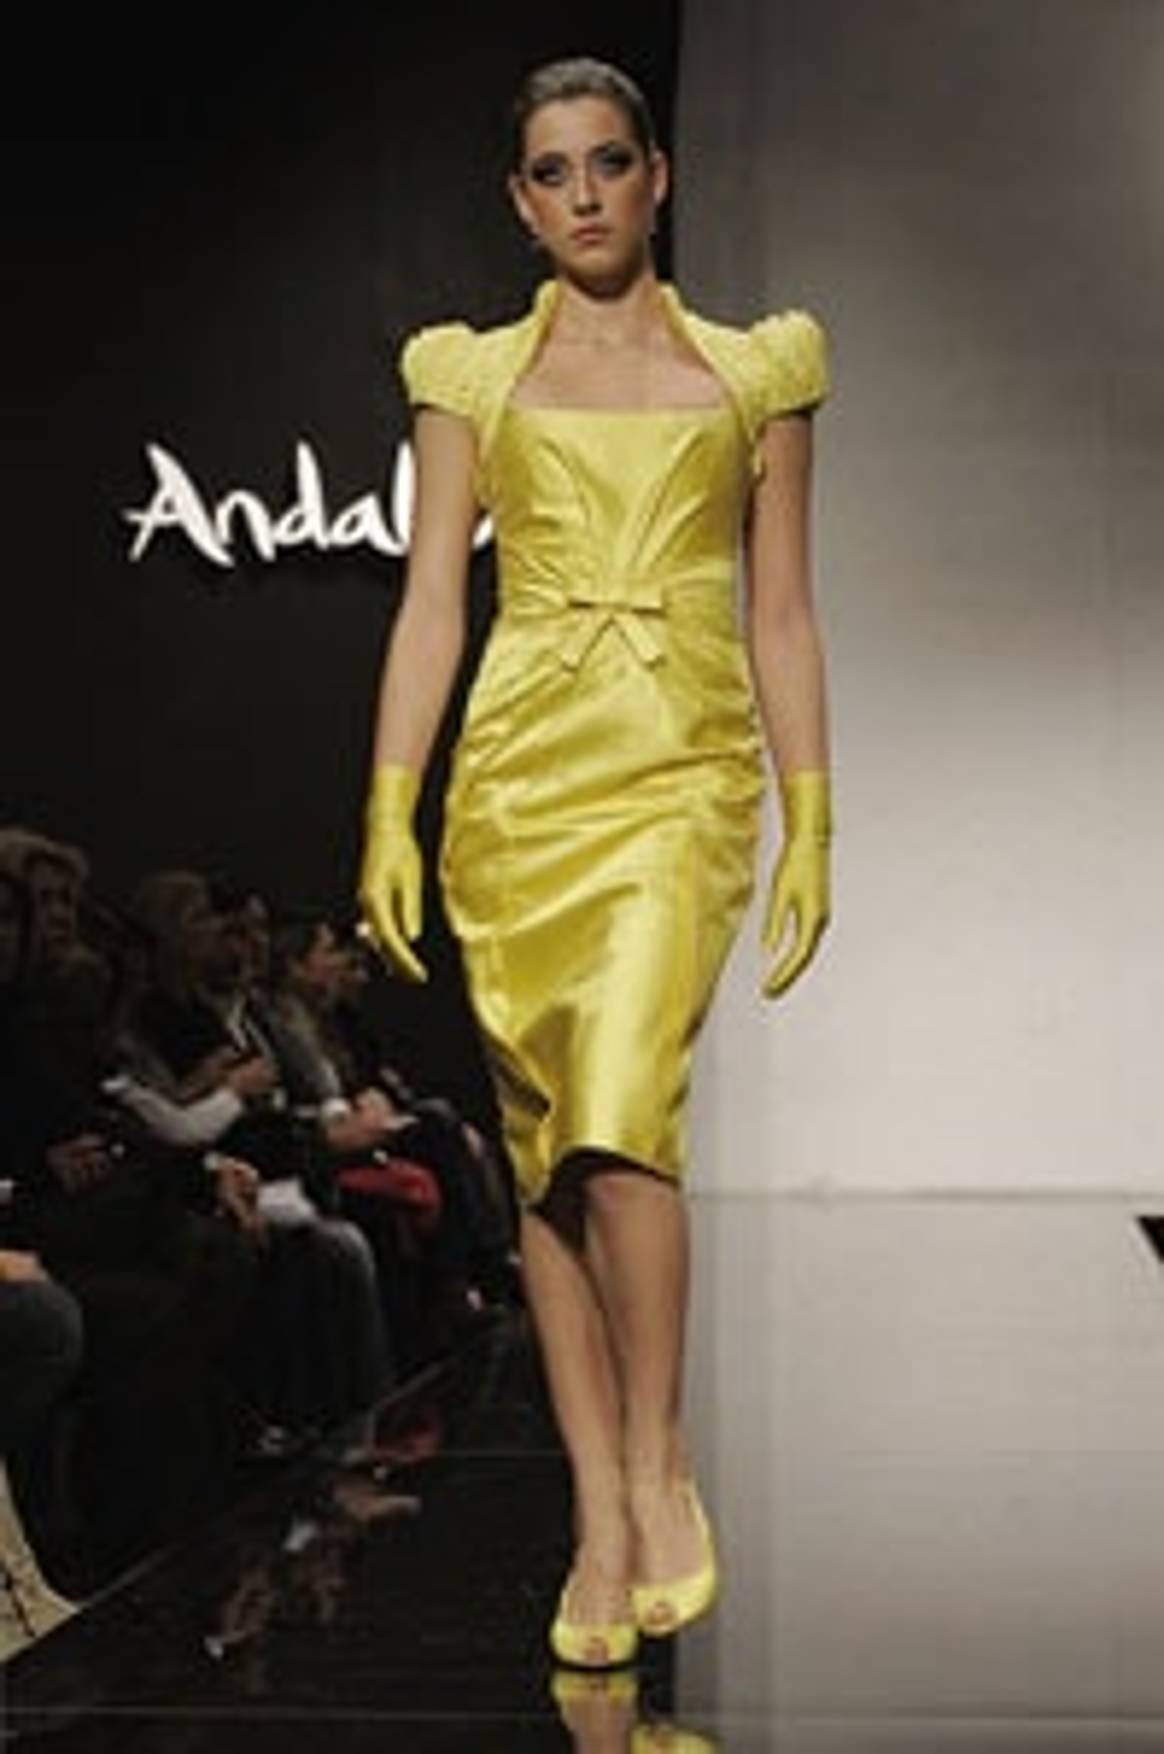 Cuarta edición de Andalucía de Moda